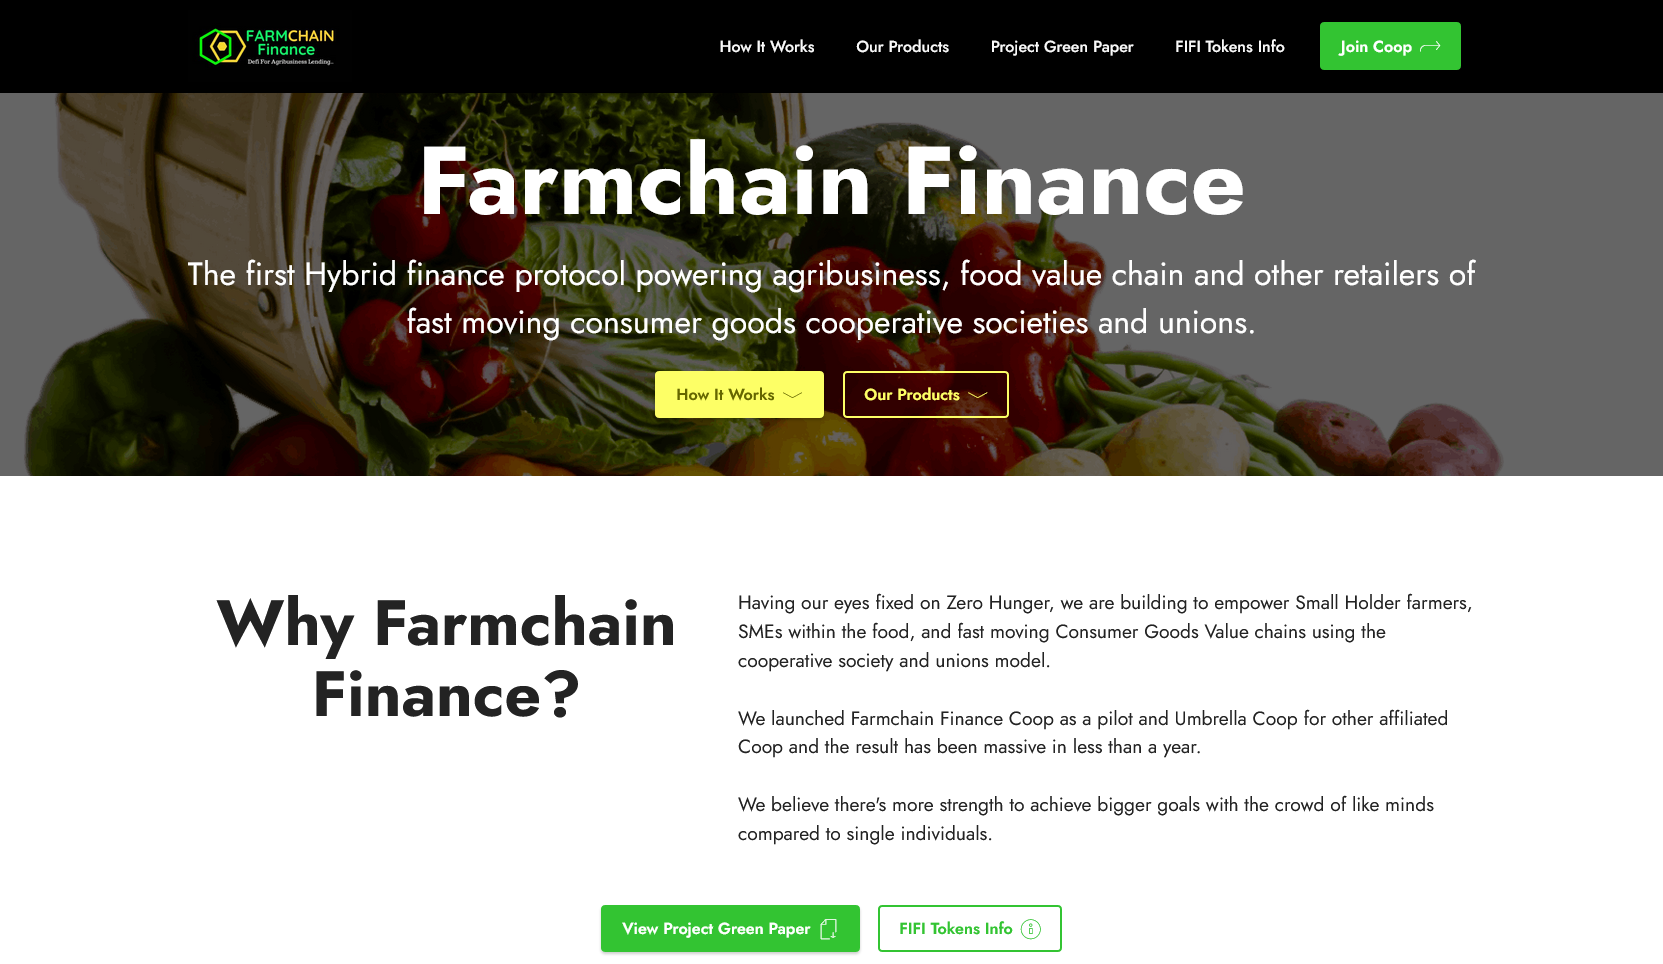 Farmchain Finance